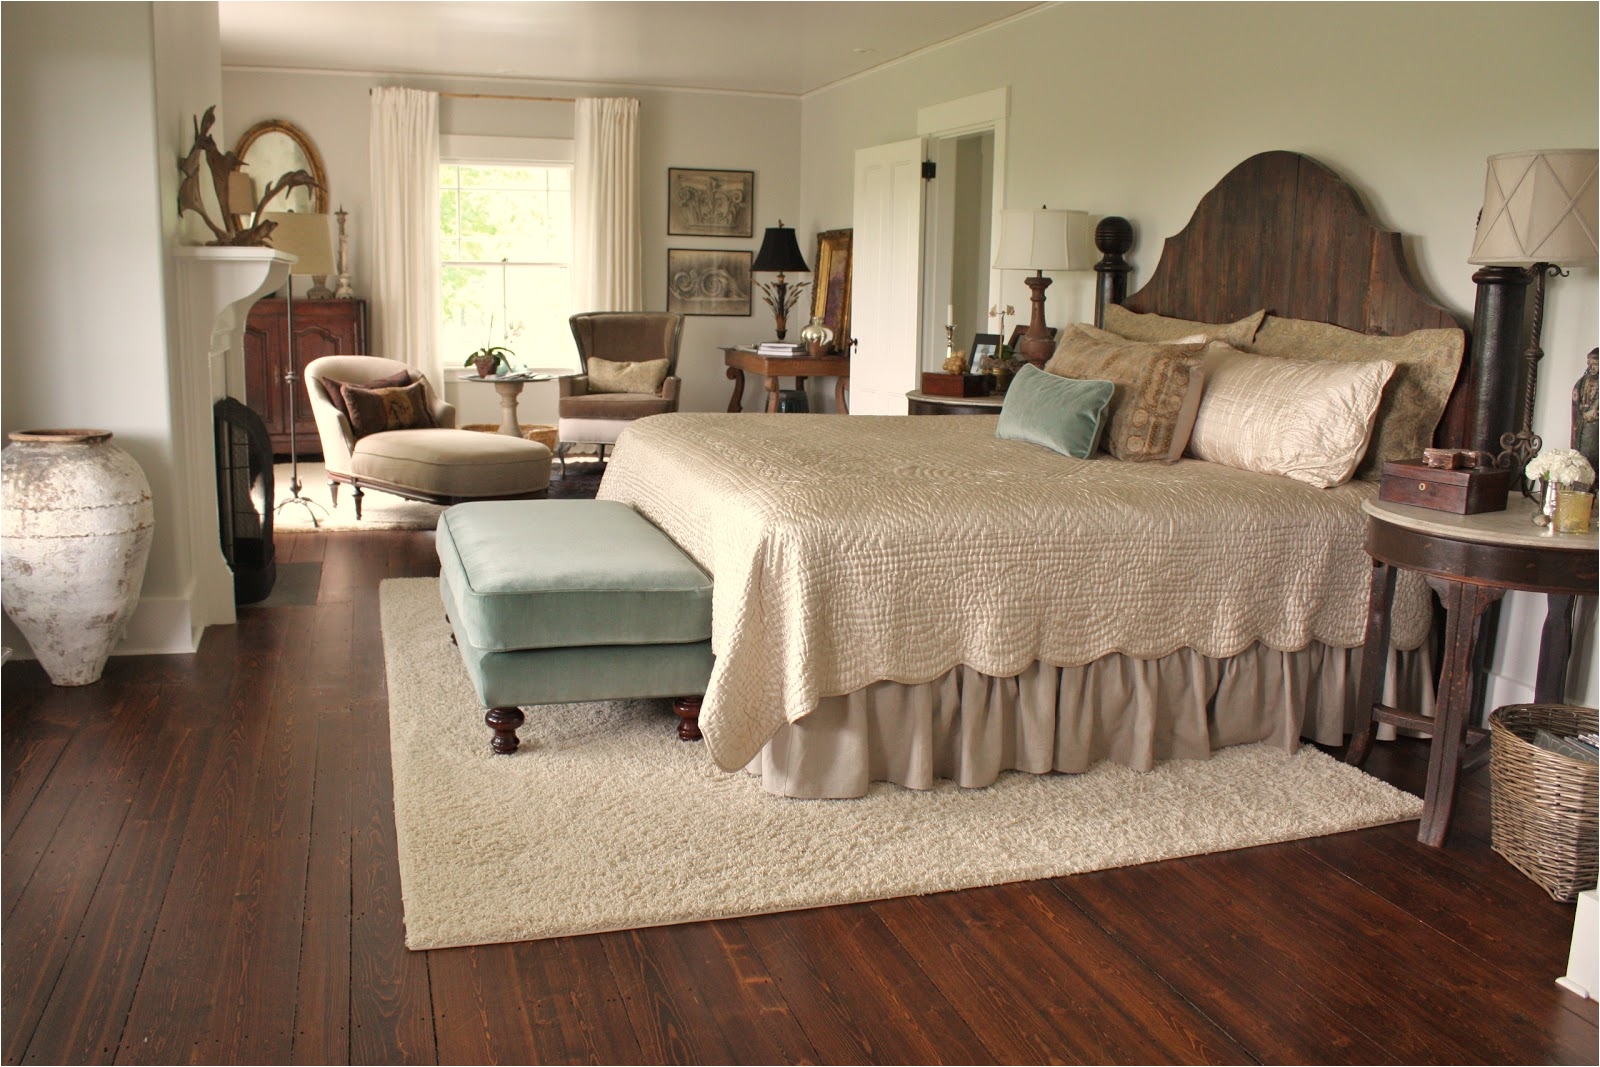 large area rug under bed designs